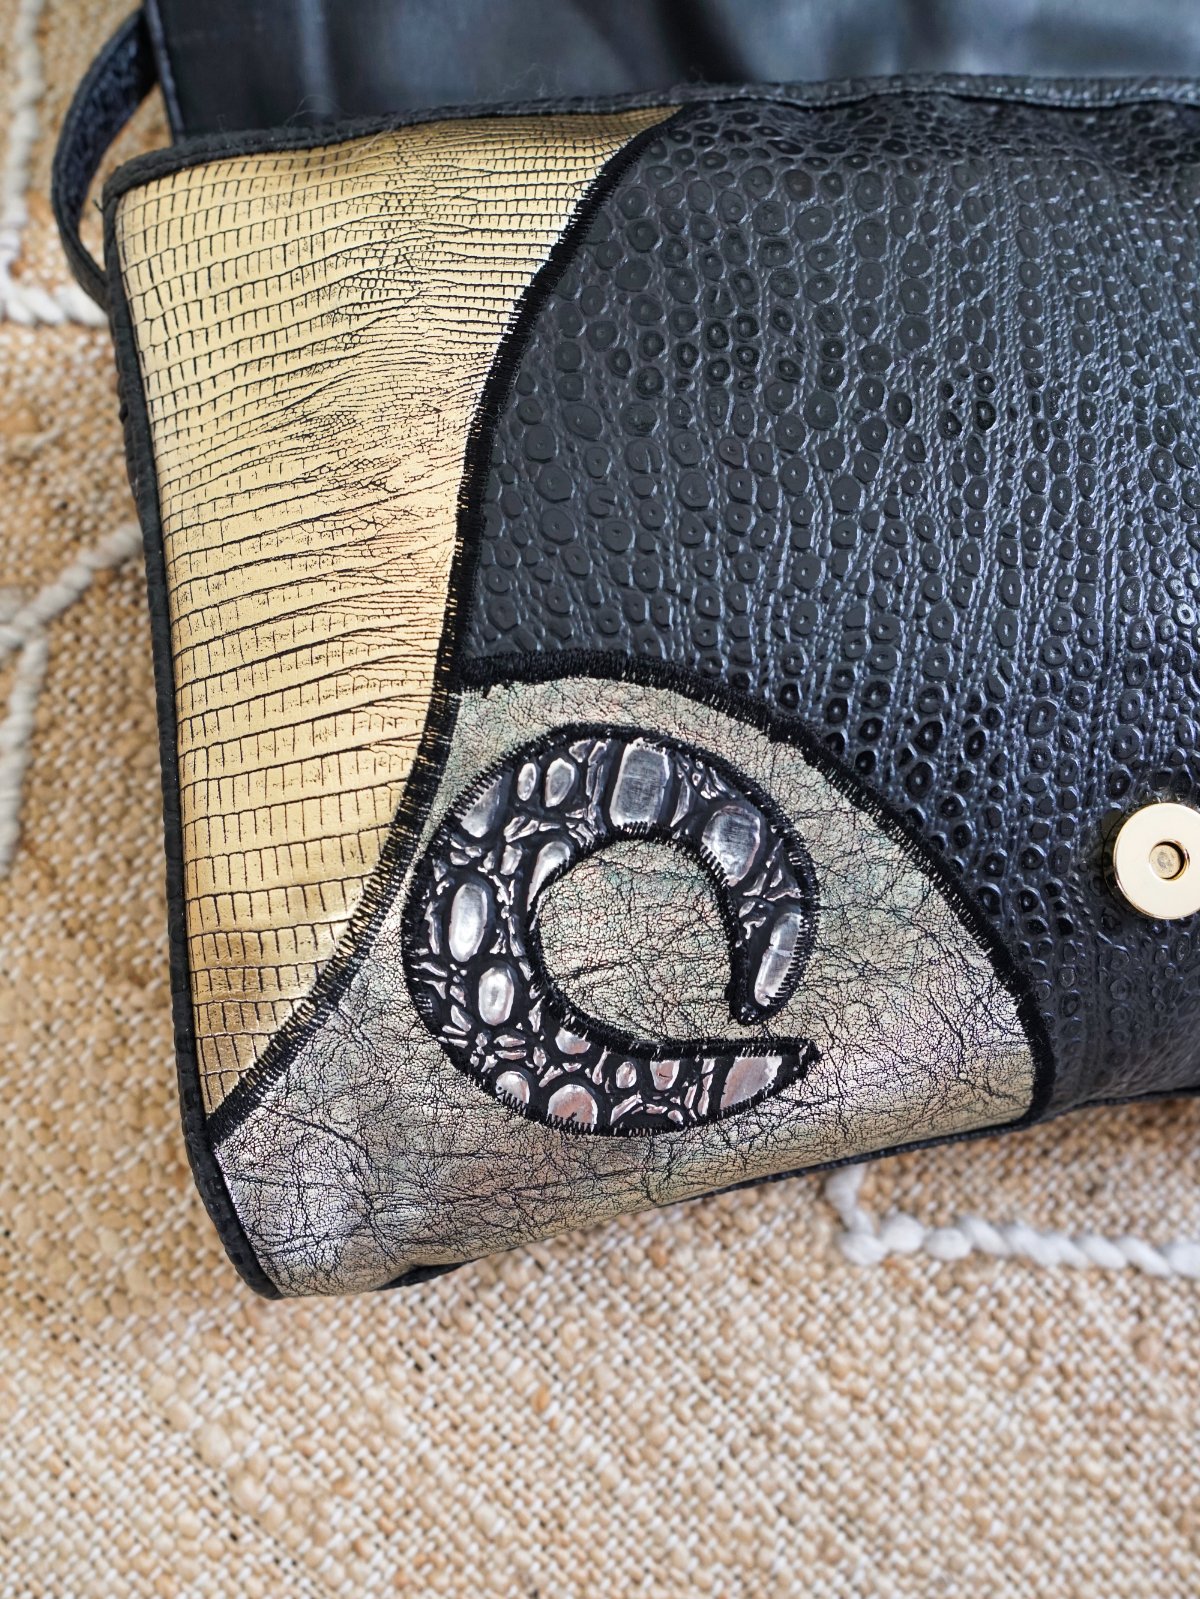 Elephant Leather Handbag/vintage Shoulder Strap Bag/leather Purse/medium  Satchel - Etsy